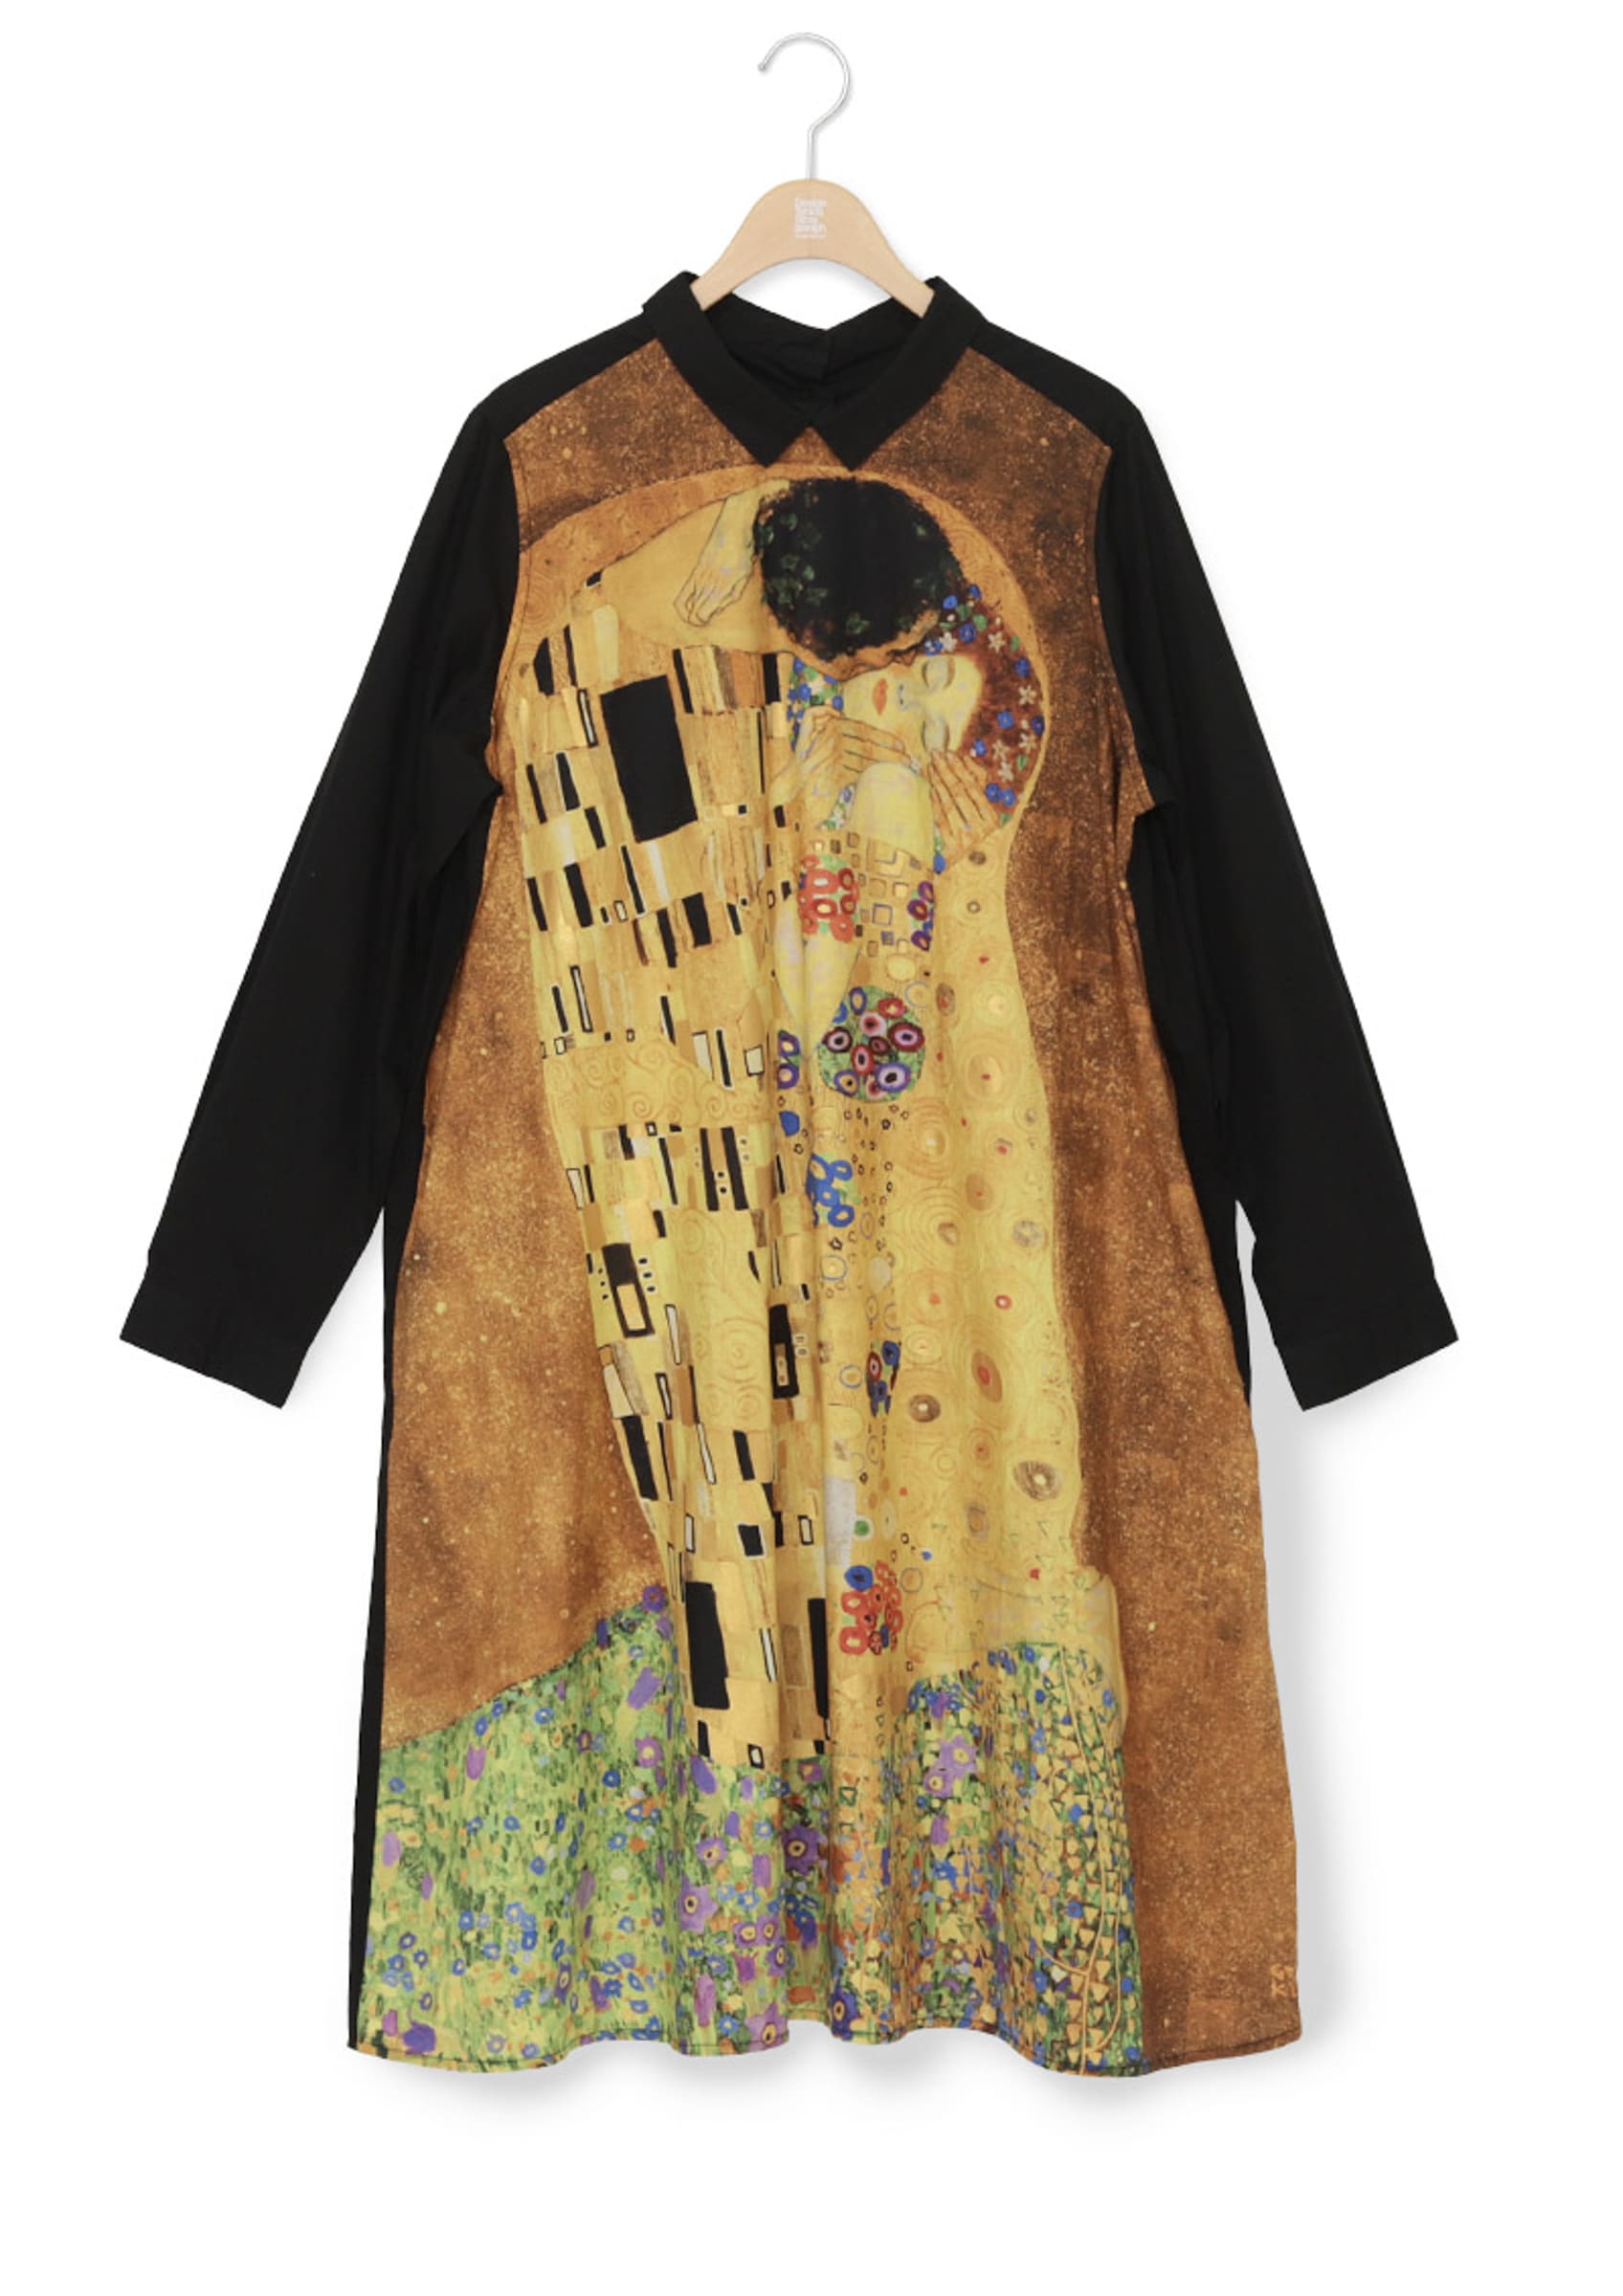 日本艺术 T 恤品牌 Graniph 将带来维也纳画家 Gustav Klimt 作品系列